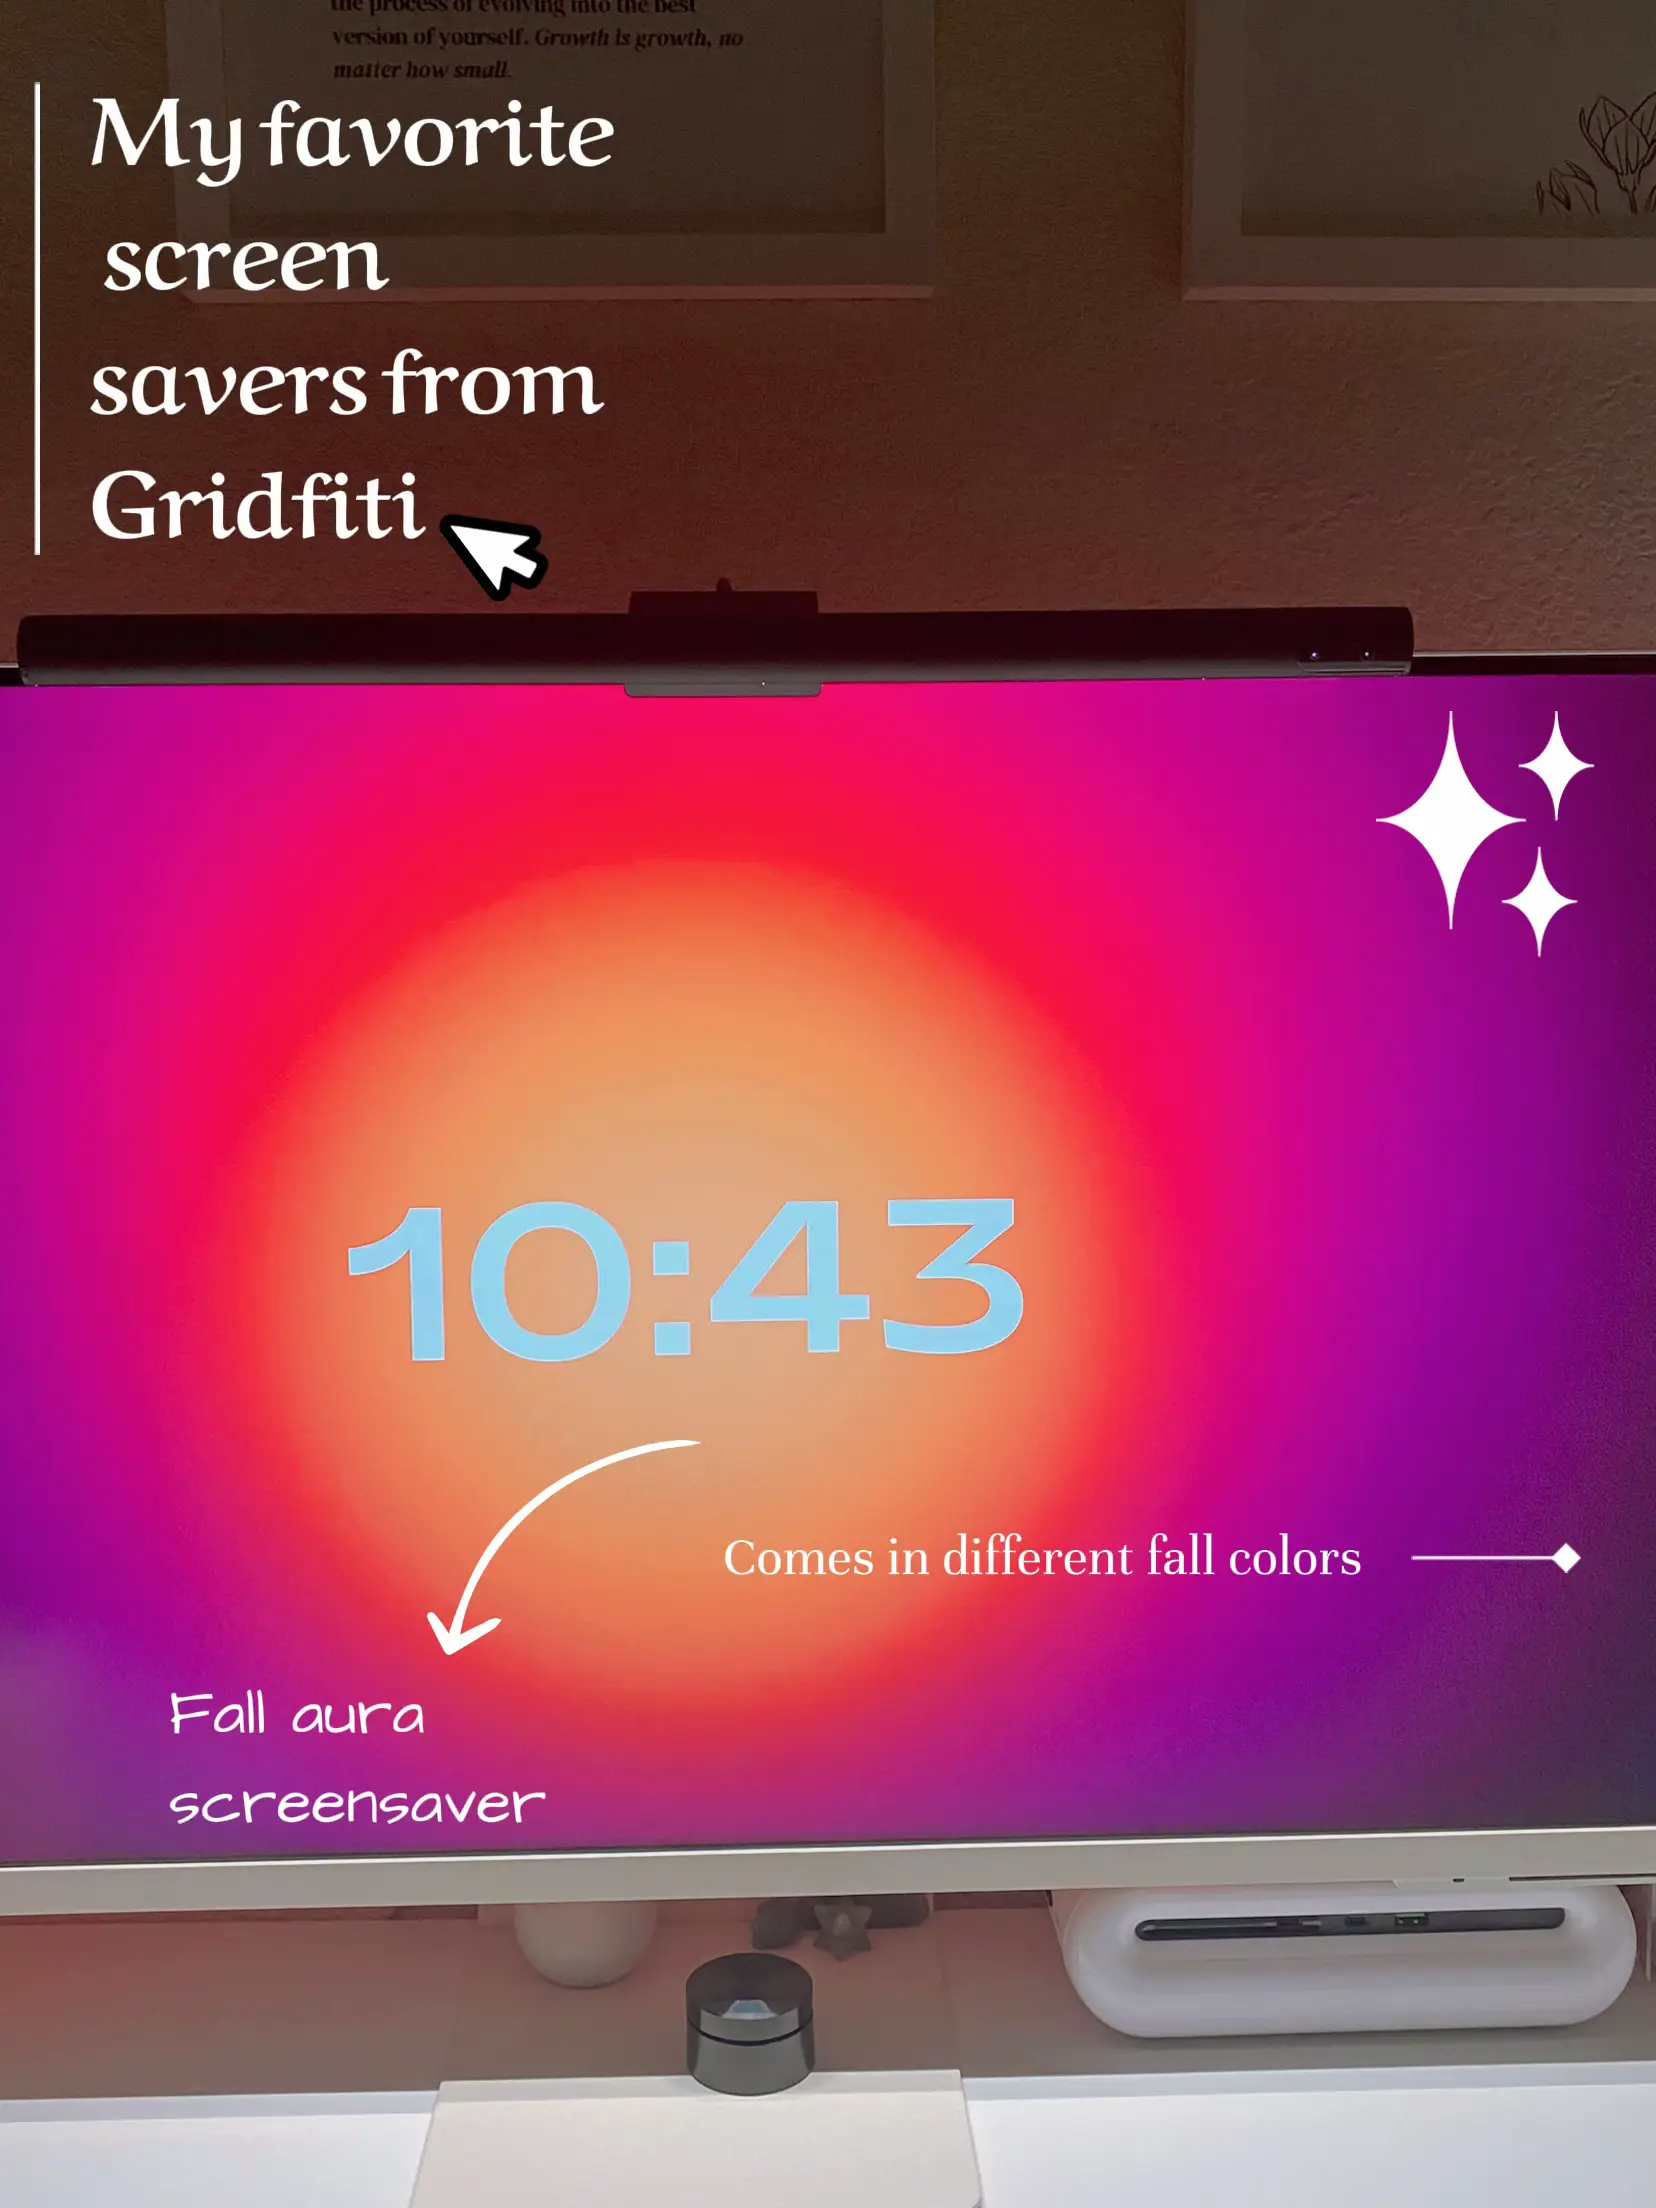 Transparent Clock Gadget for Windows 10 - Lemon8 Search